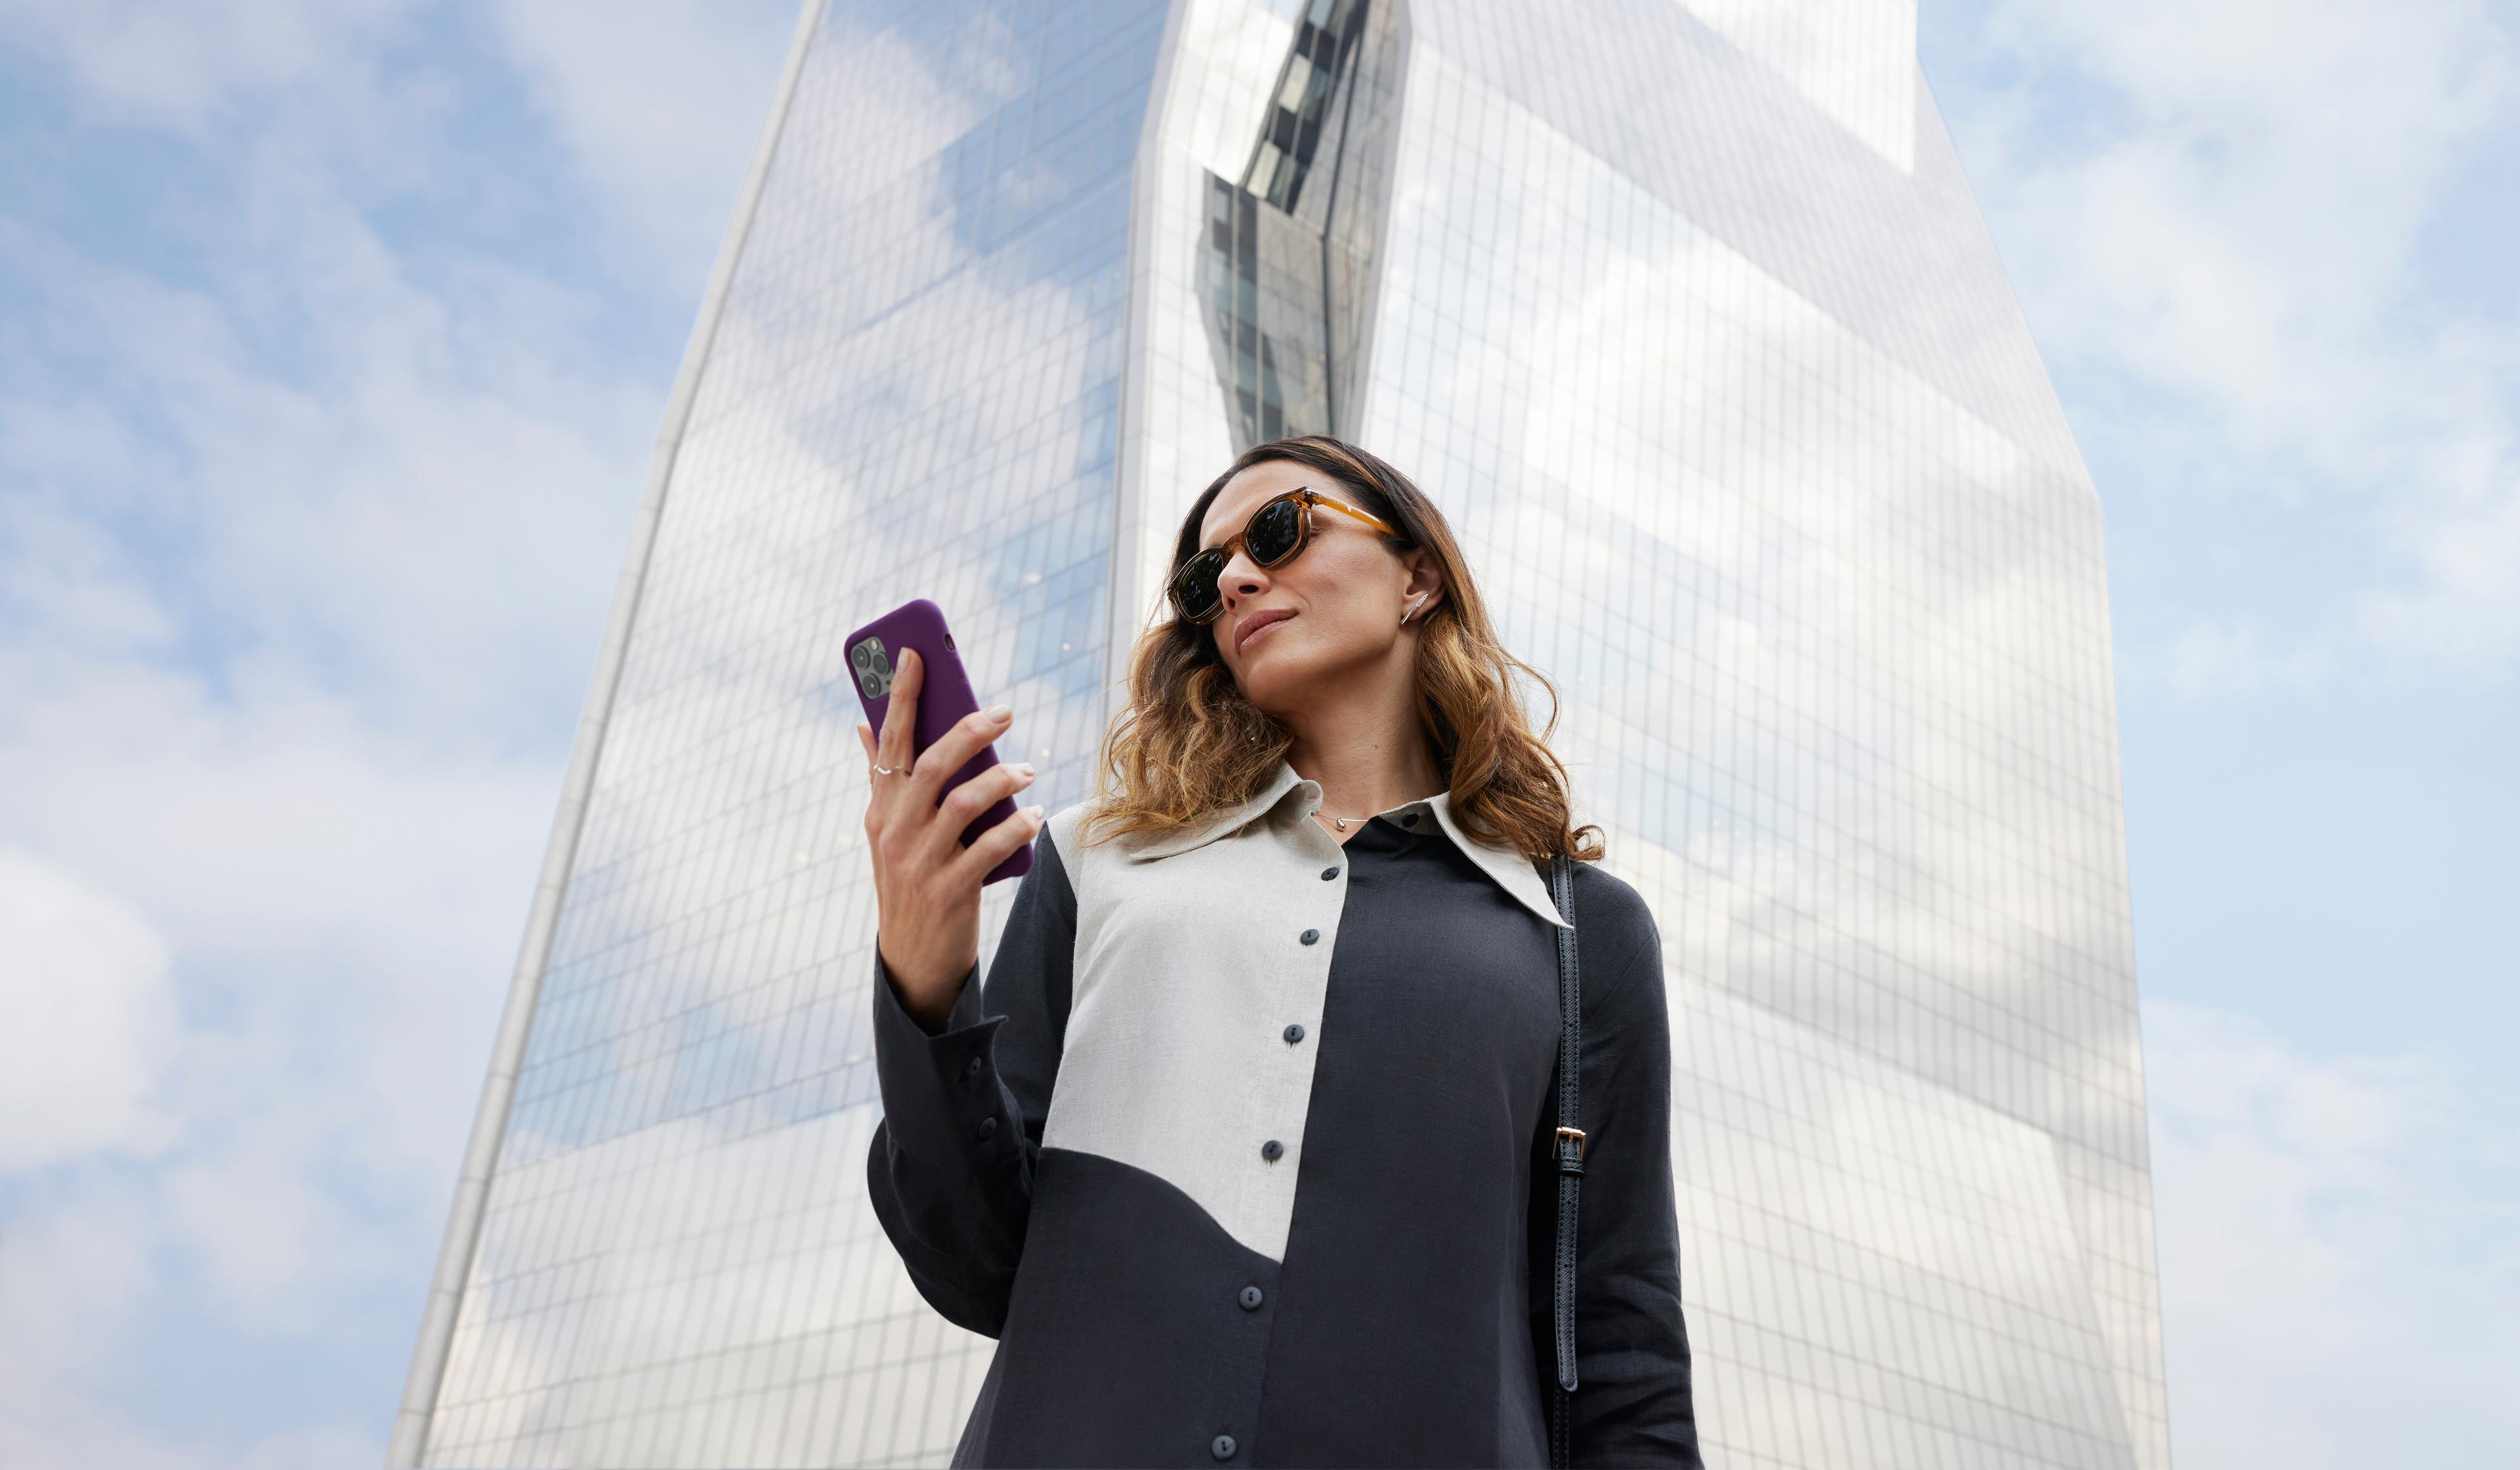 Foto de uma mulher branca, usando óculos de sol. Ela está vestindo uma roupa preta e branca, segurando um celular na mão. Atrás, um prédio espelhado.